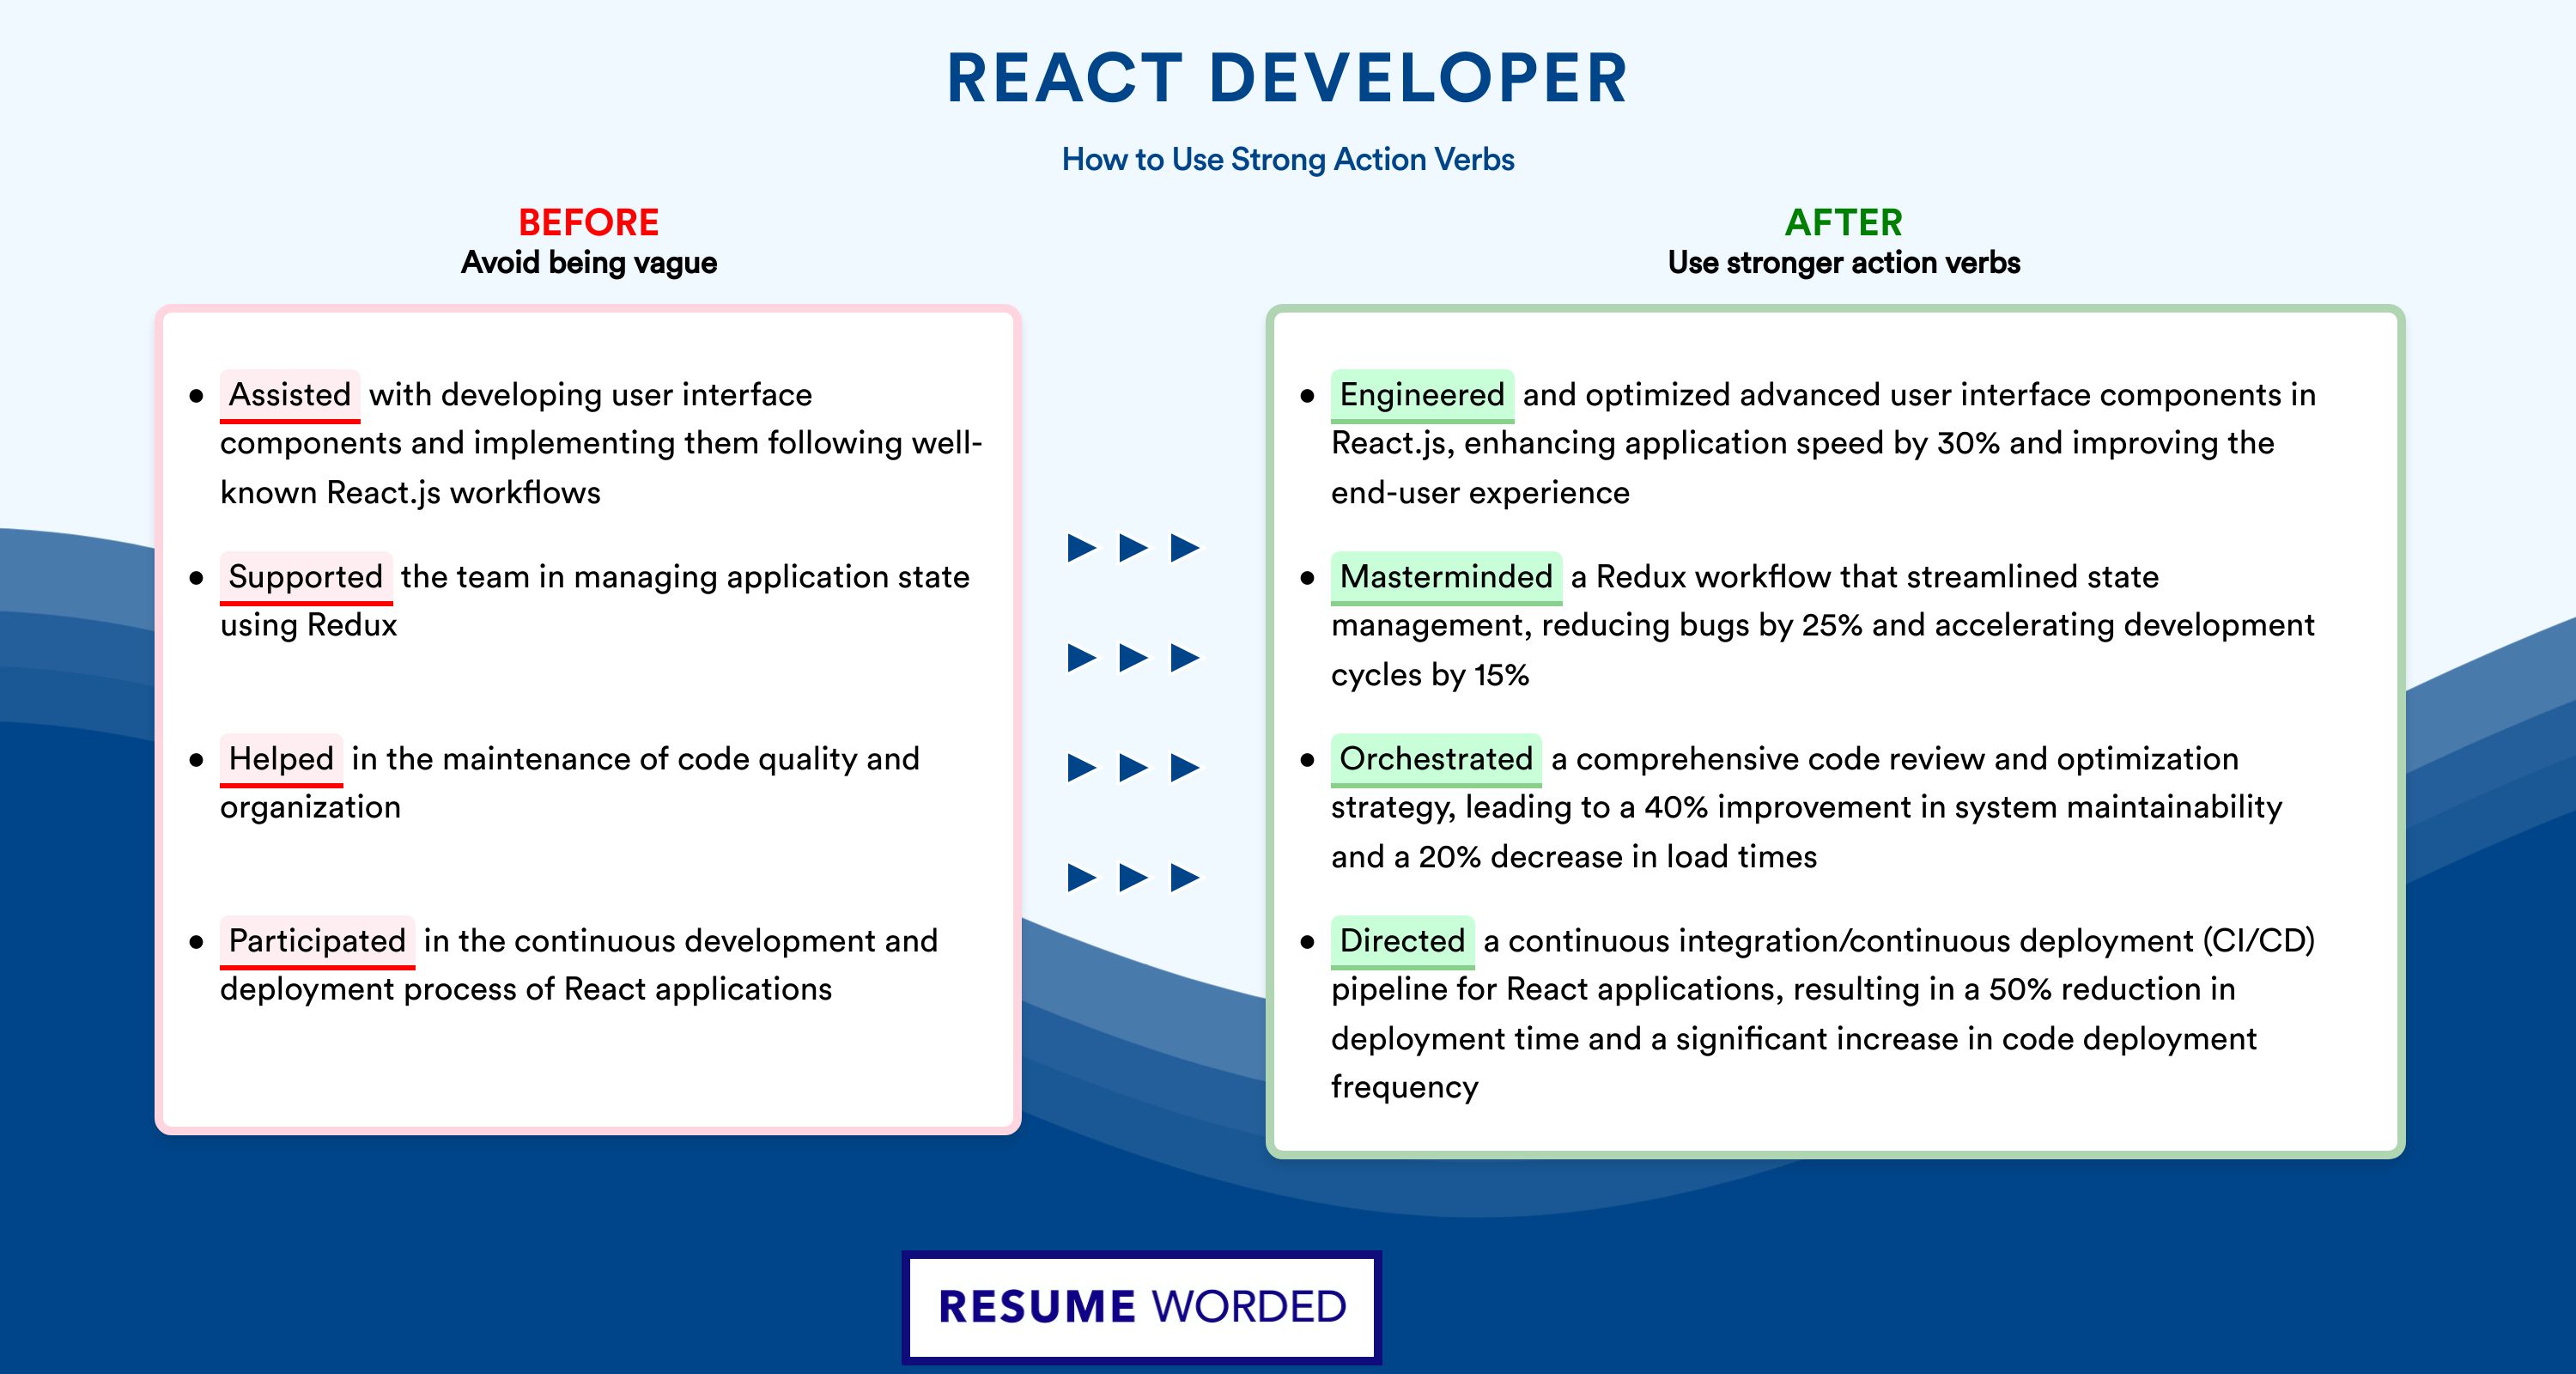 Action Verbs for React Developer